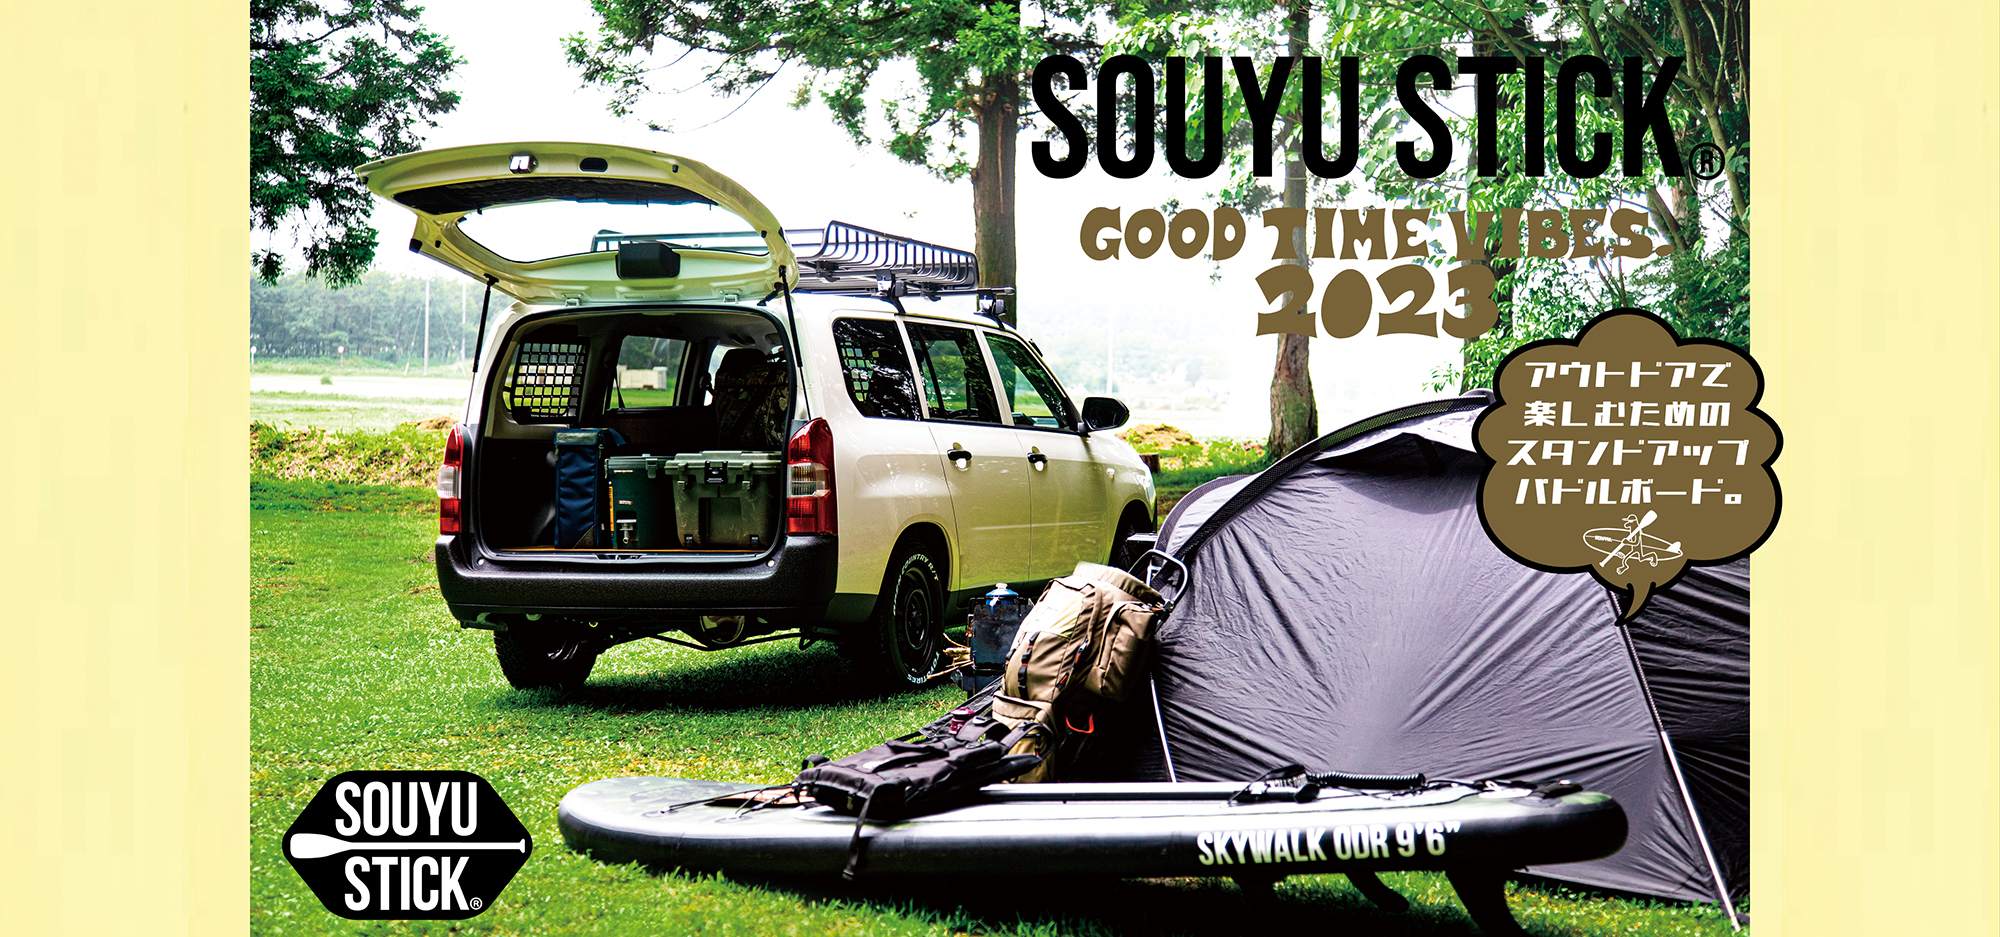 SOUYU STICK® – Inflatable SUP for OUTDOOR. アウトドアを楽しむためのインフレータブルSUPブランドです。